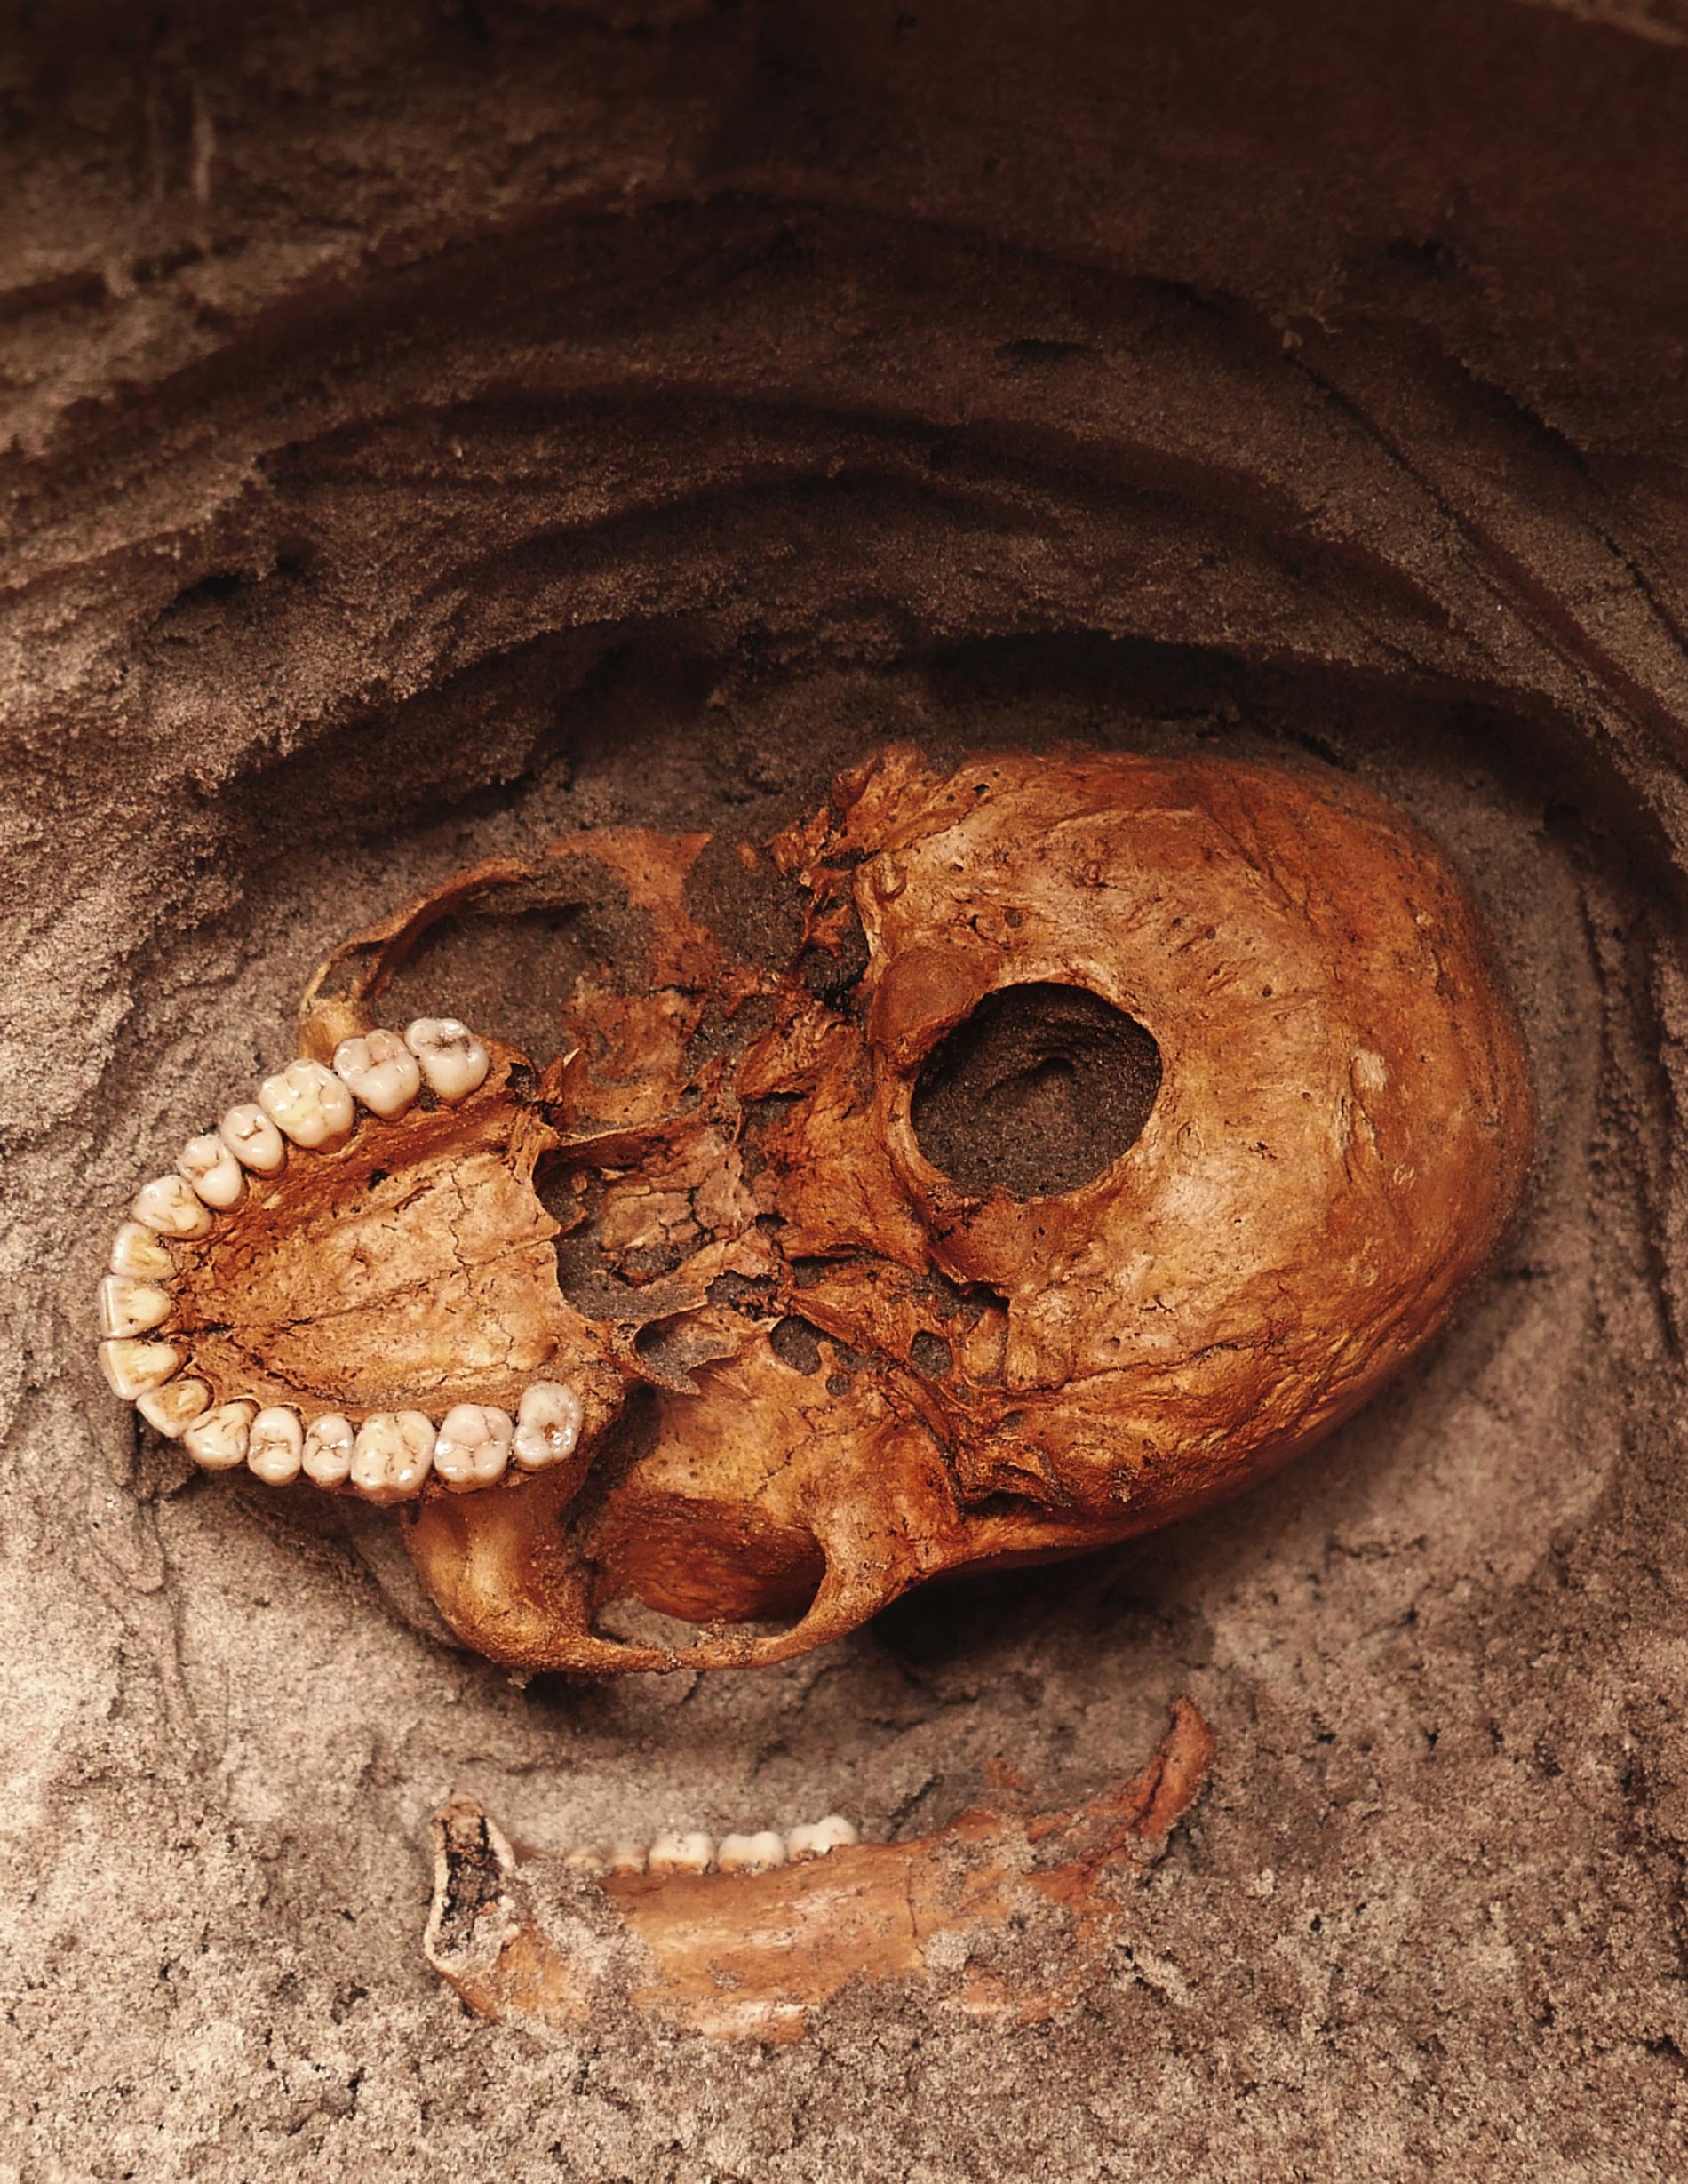 一顆人類顱骨從坦尚尼亞潘加尼河畔的灰色砂土中向外窺視，這座遺址曾經是早期史瓦希利（Swahili）漁村。大約1000年前，海嘯突然摧毀了這座村莊，造成許多居民罹難。PHOTOGRAPH BY VITTORIO MASELLI